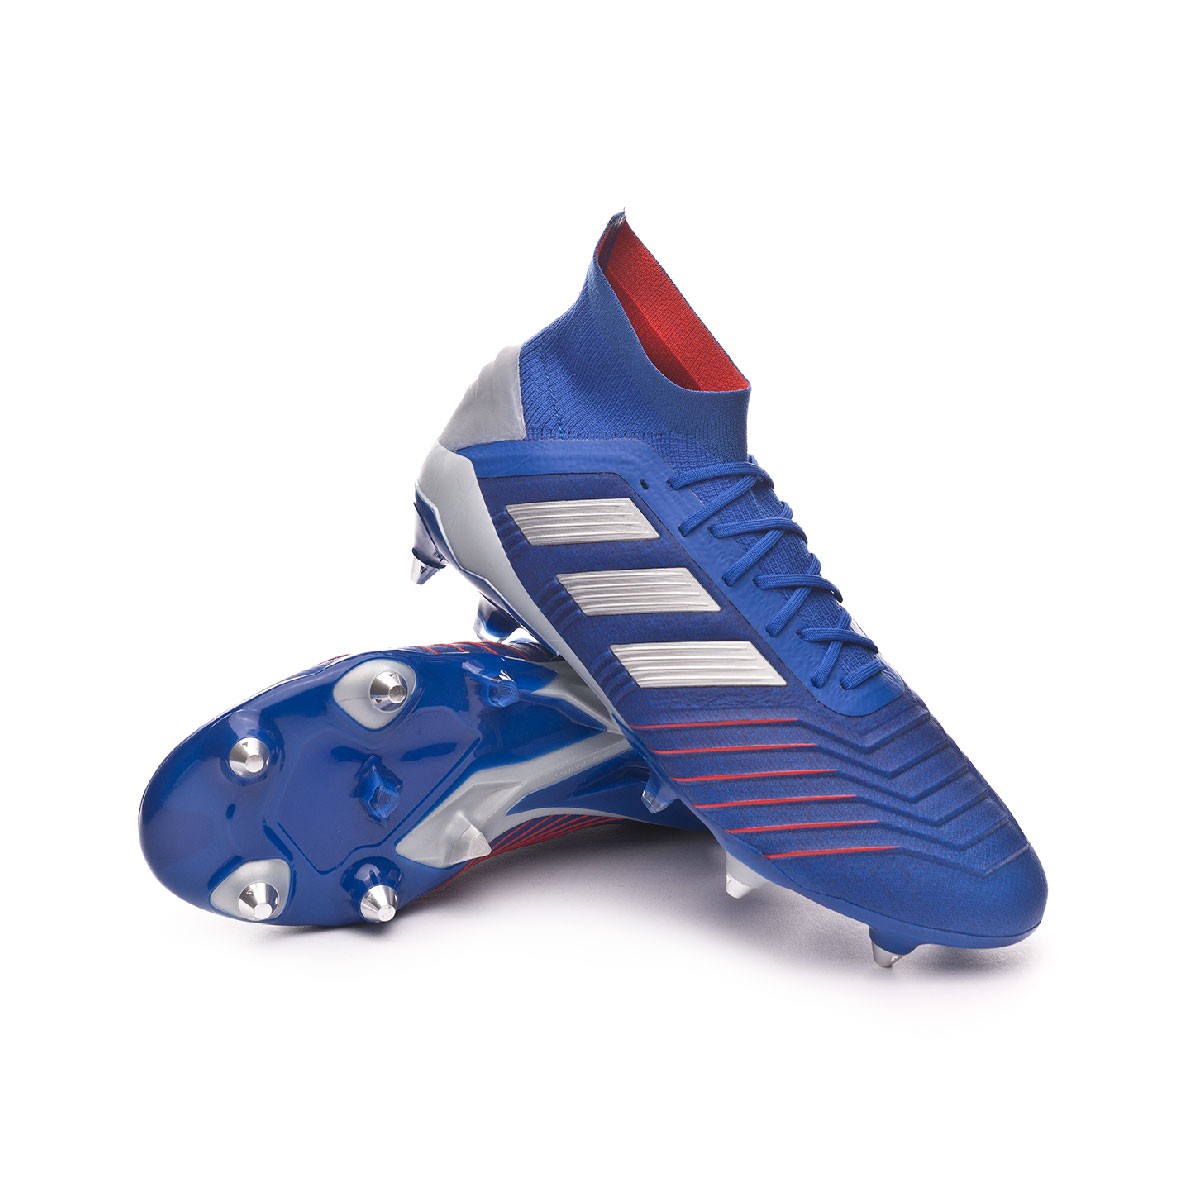 predator zapatos de futbol - Tienda Online de Zapatos, Ropa y Complementos  de marca